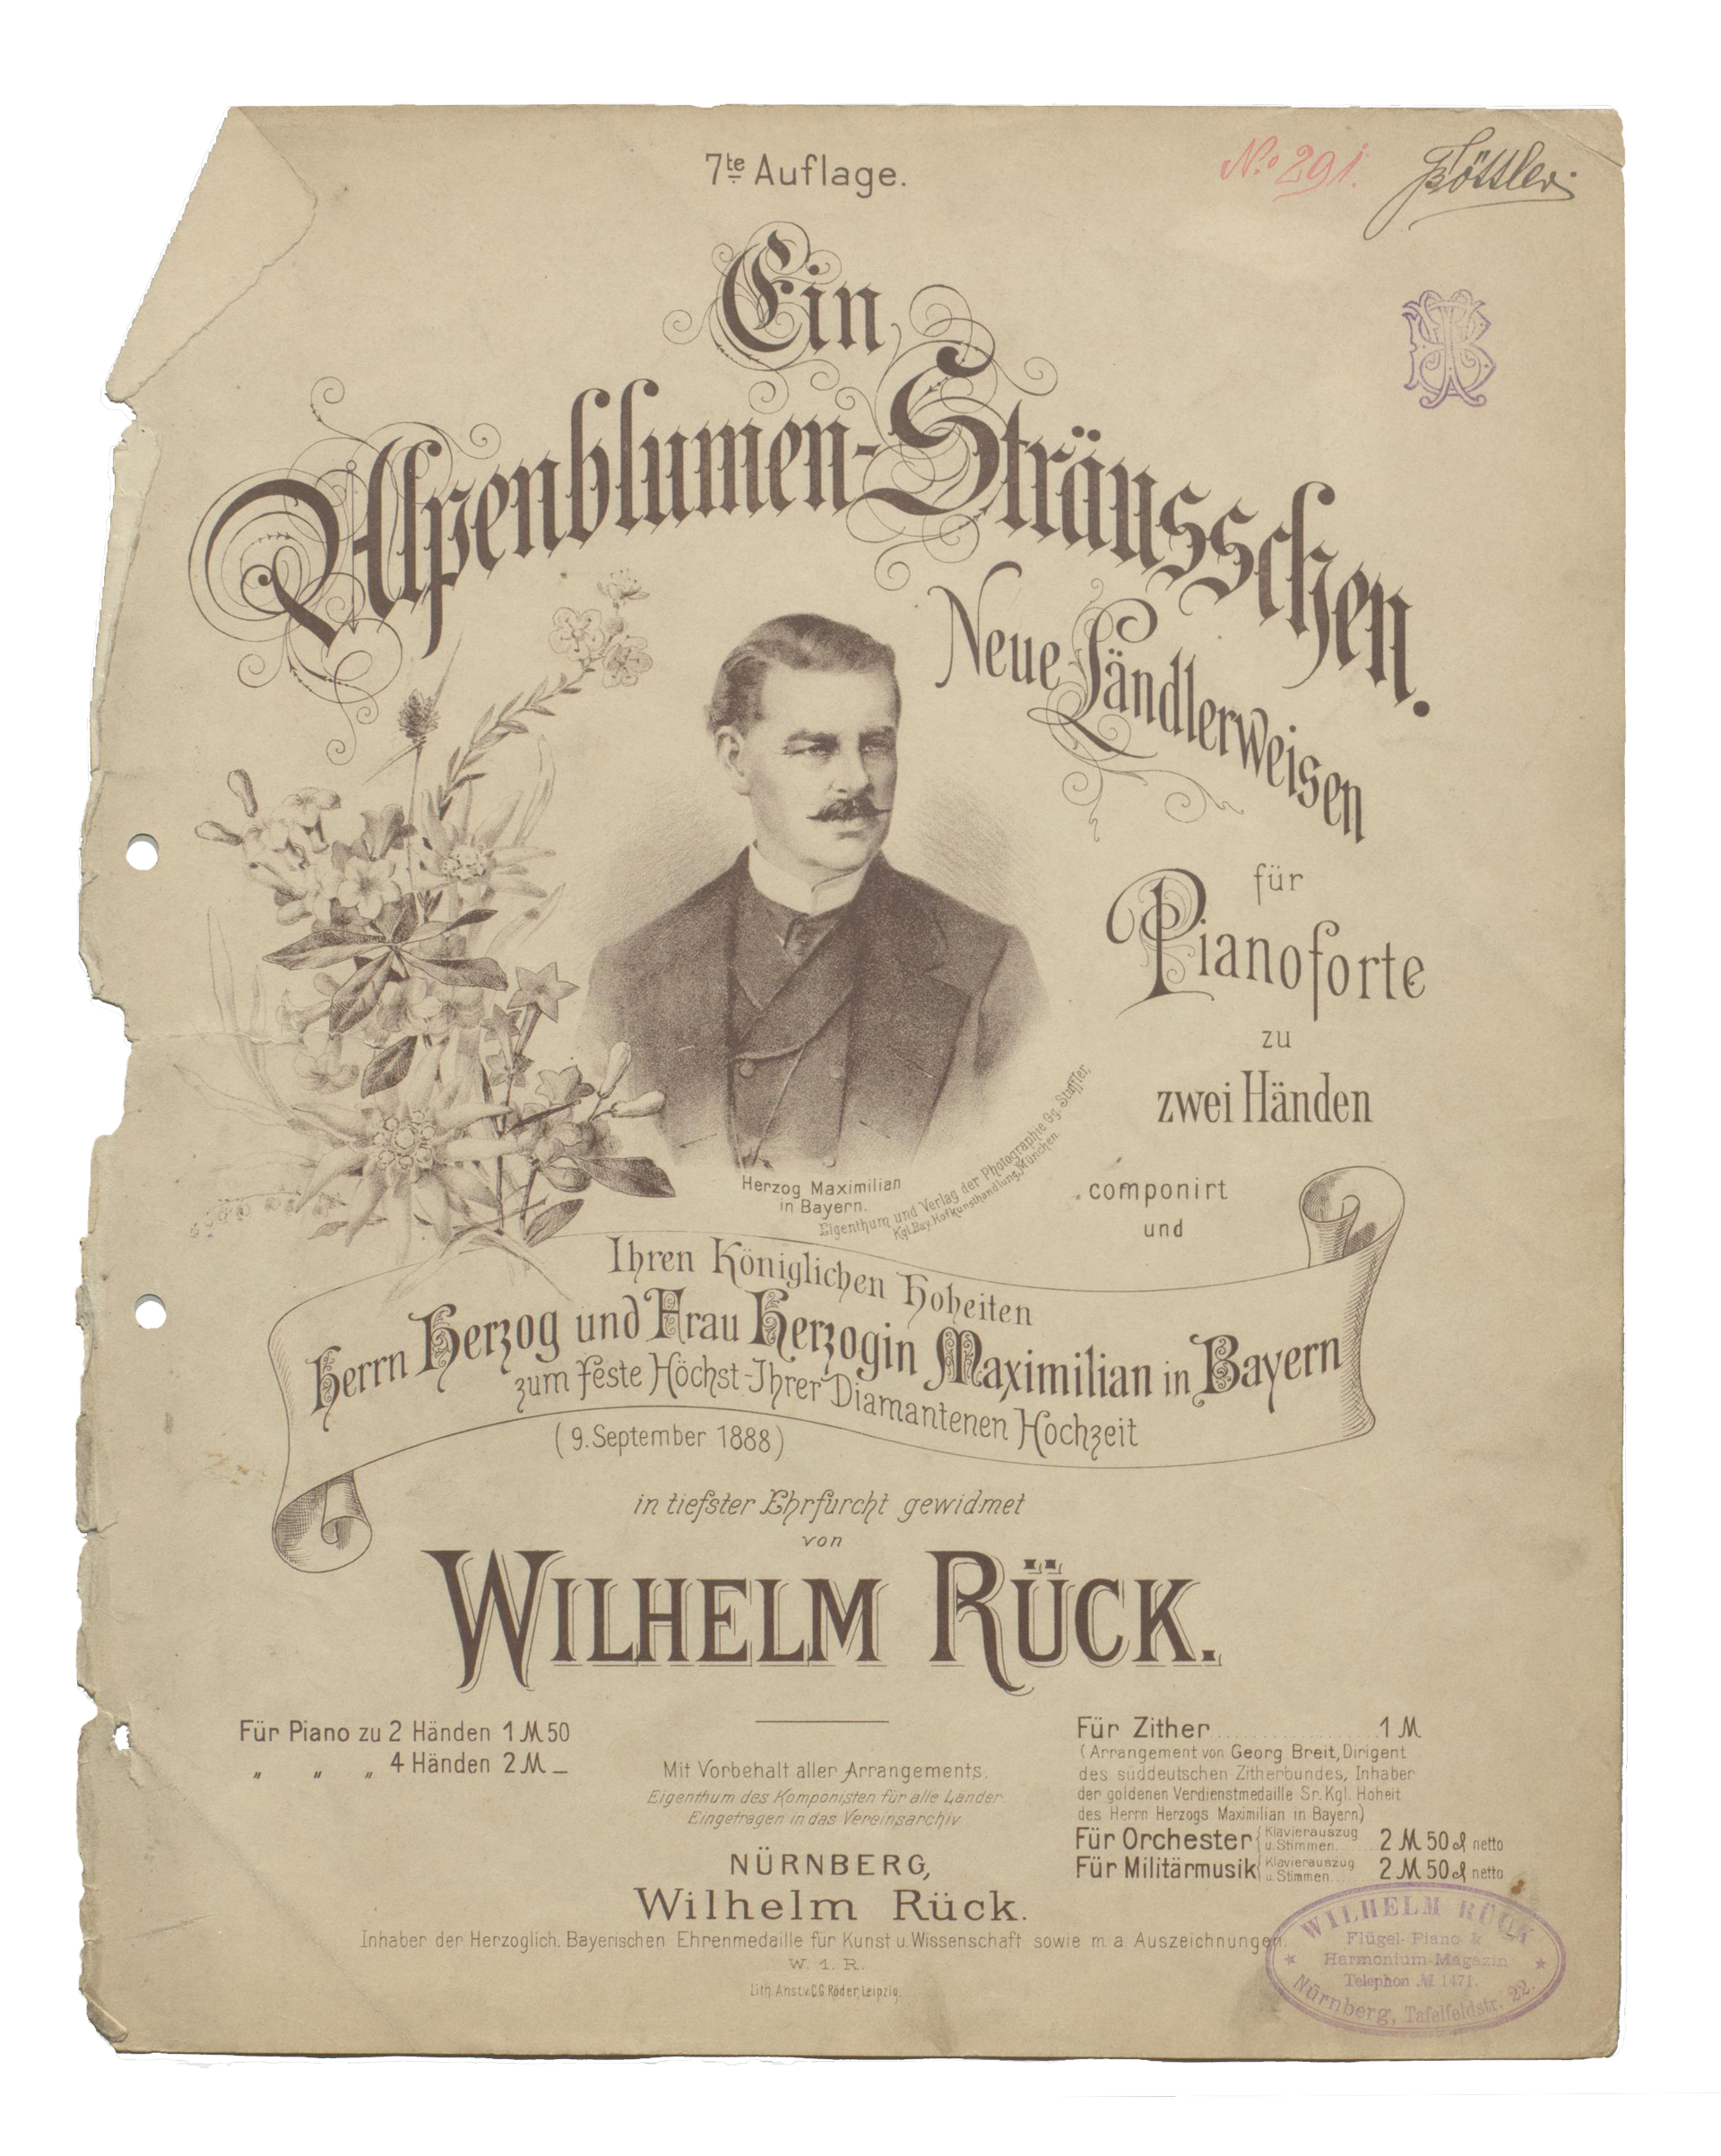 Wilhelm Rück, Ein Alpenblumensträußchen, WoO, 1888 (7. Aufl.)